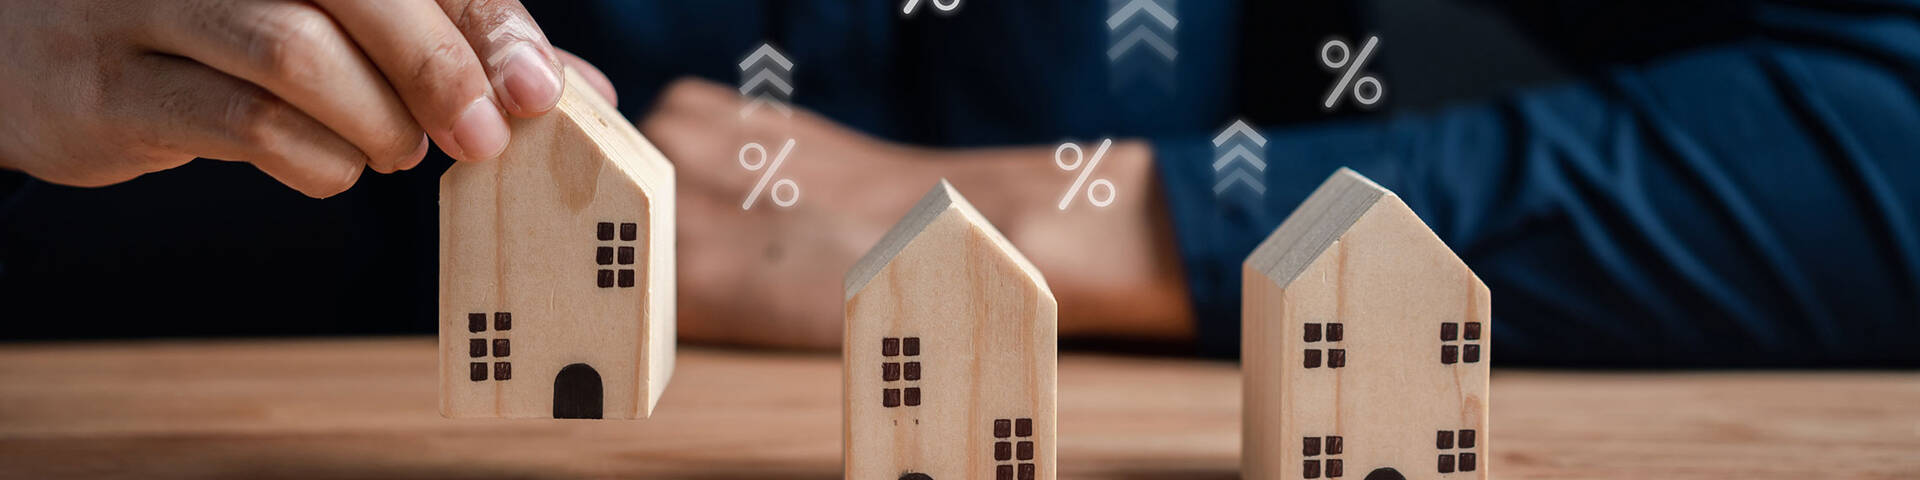 Kauf und Verkauf bei gestiegen Zinsen: Man mit Modellhäusern und Prozentzeichen